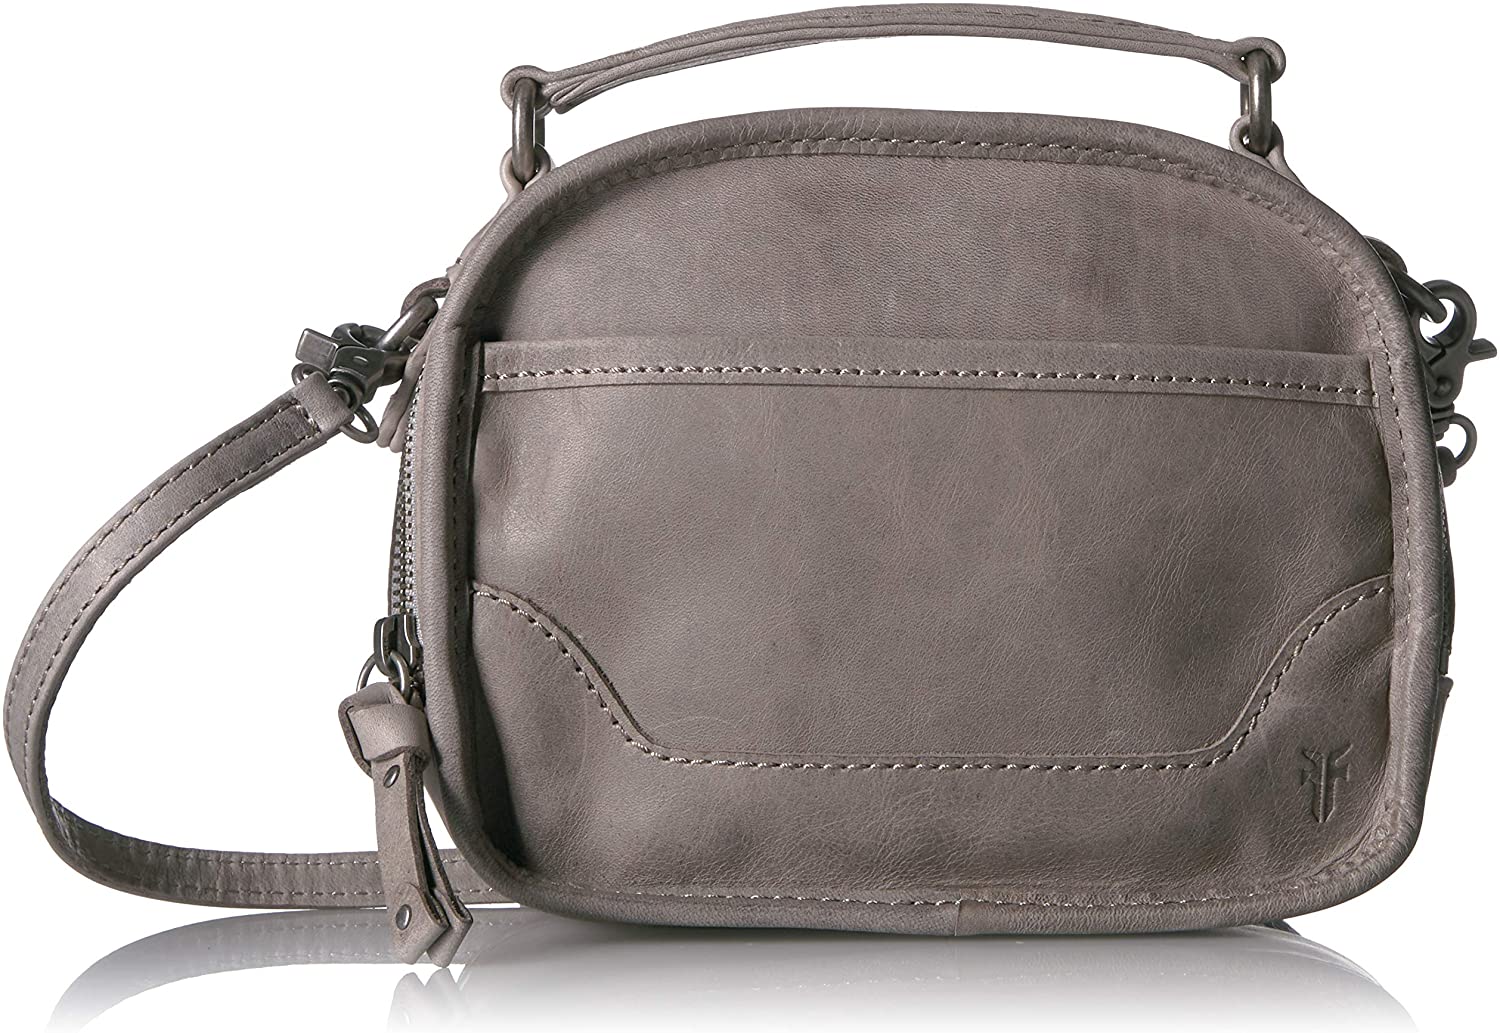 FRYE Melissa Top Handle Leather Crossbody Bag